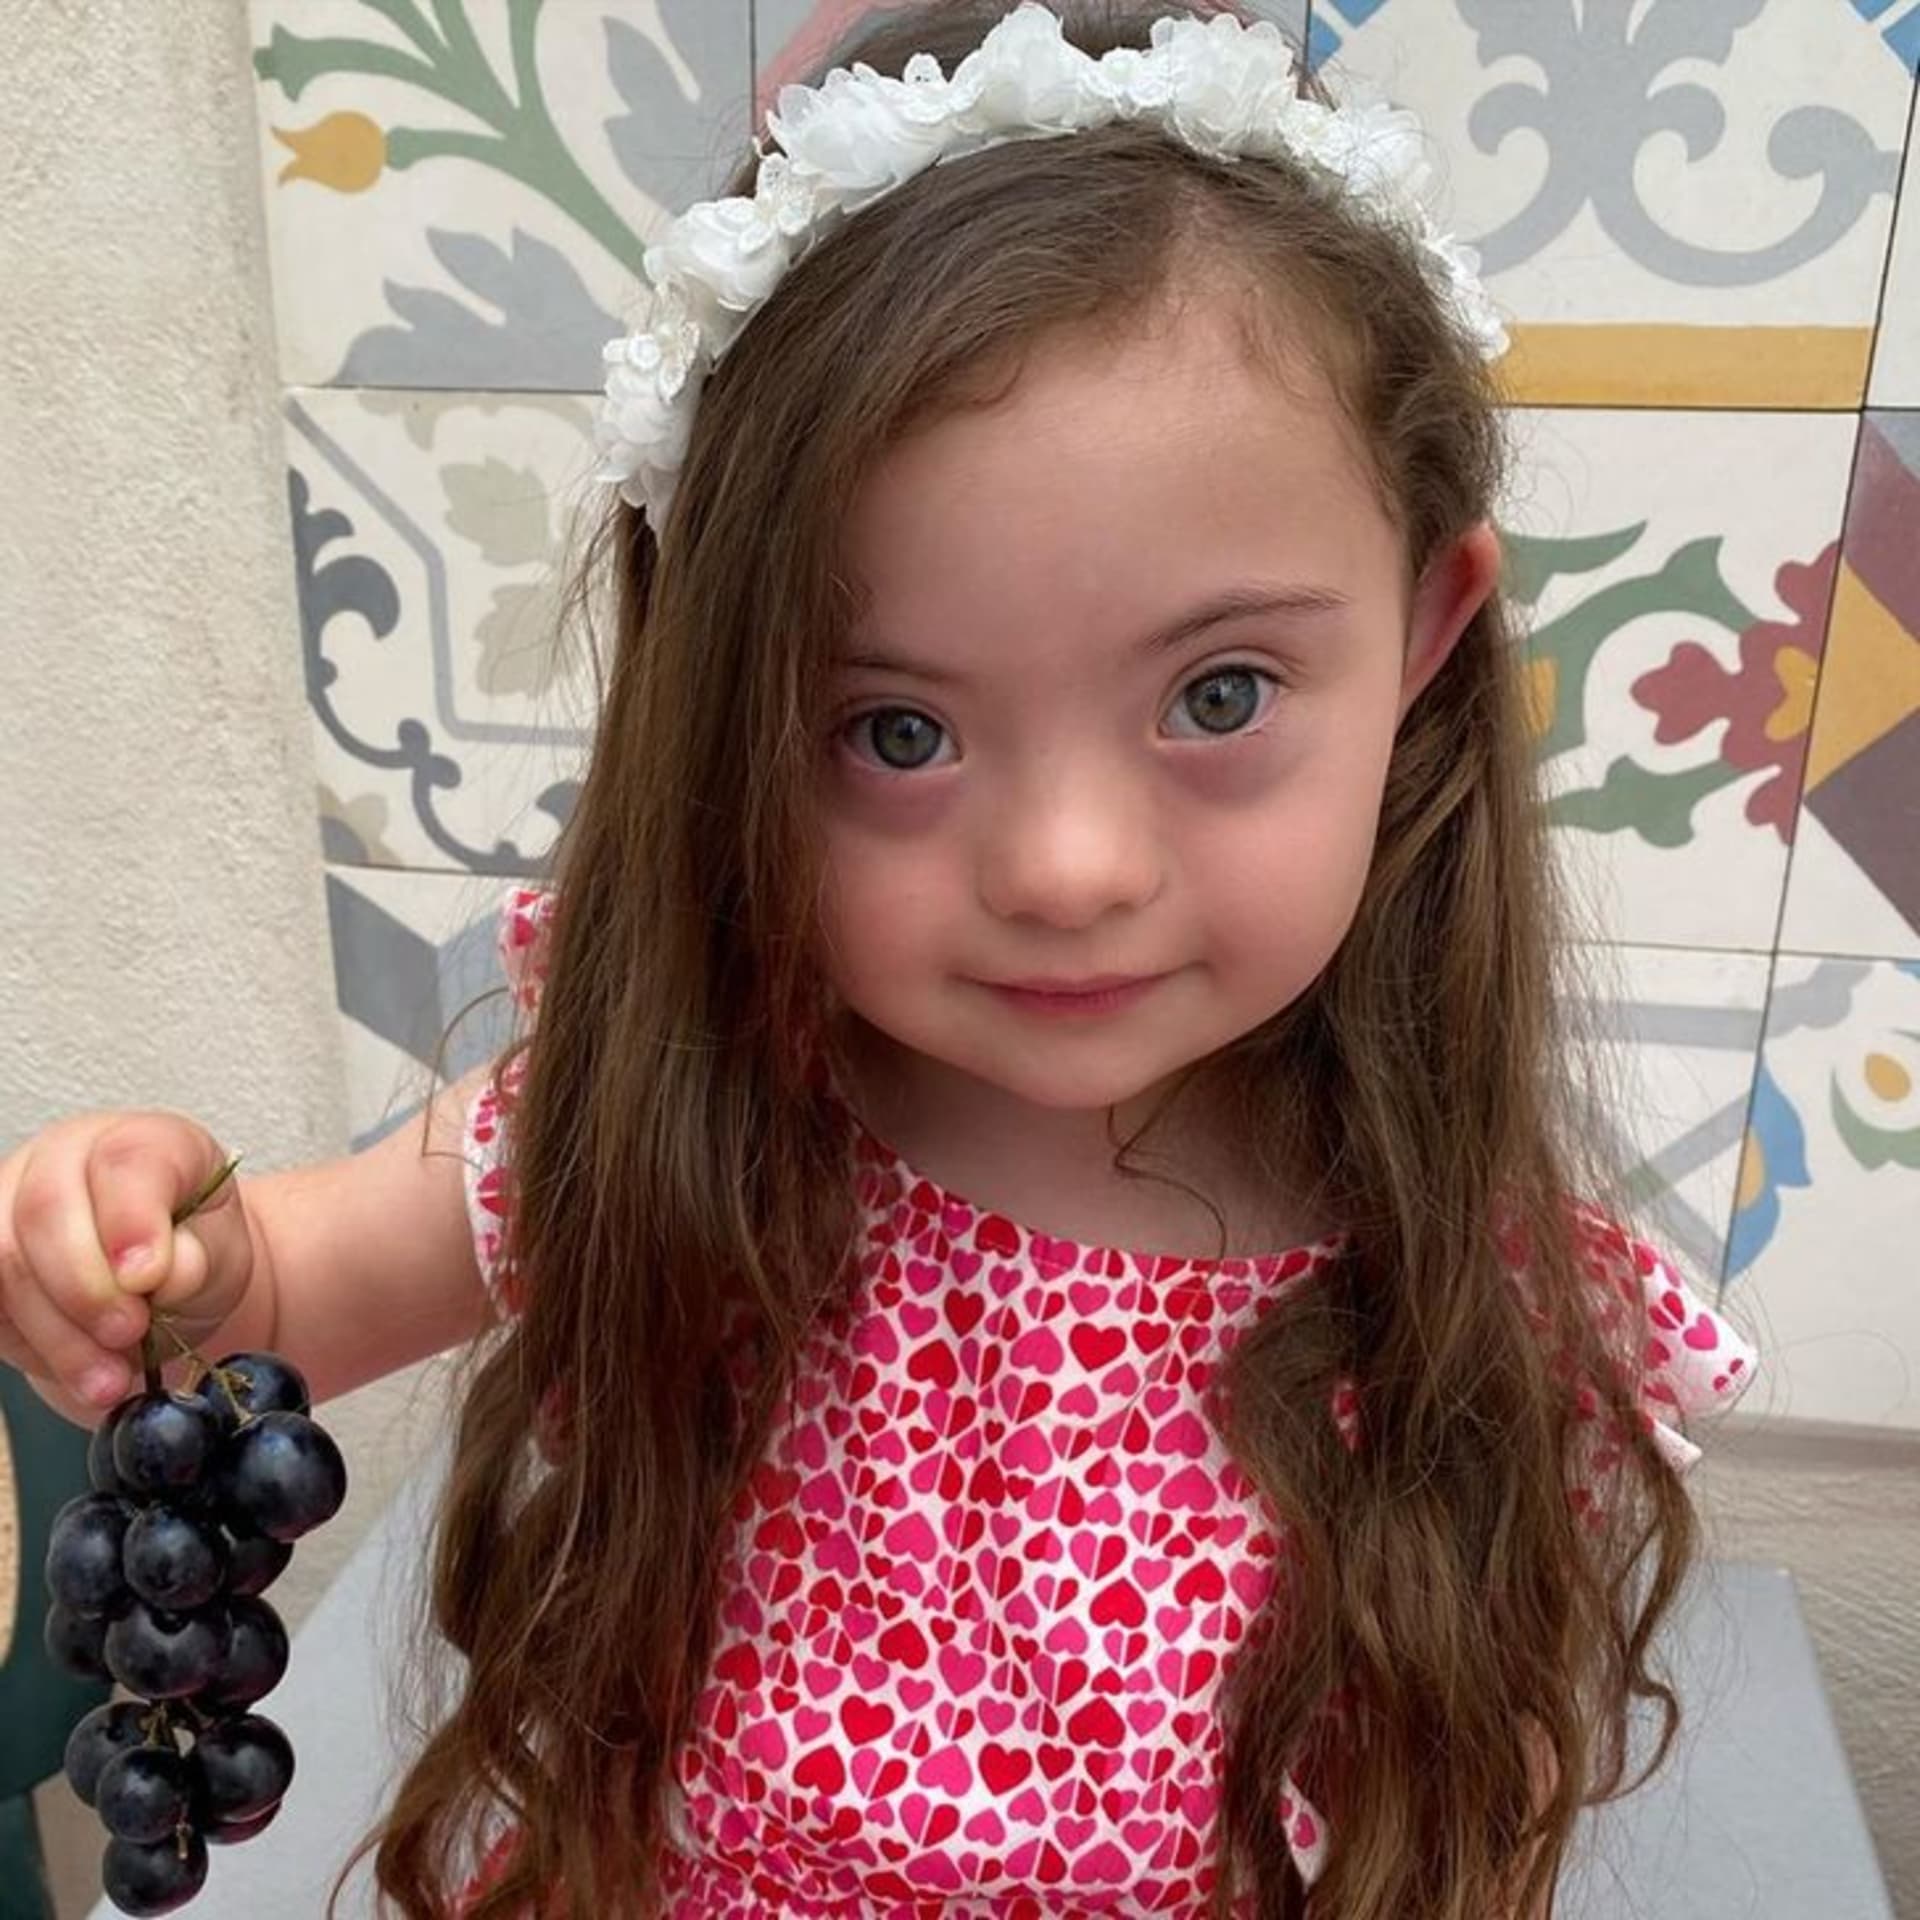 4letá dívka s Downovým syndromem pózuje jako modelka 10